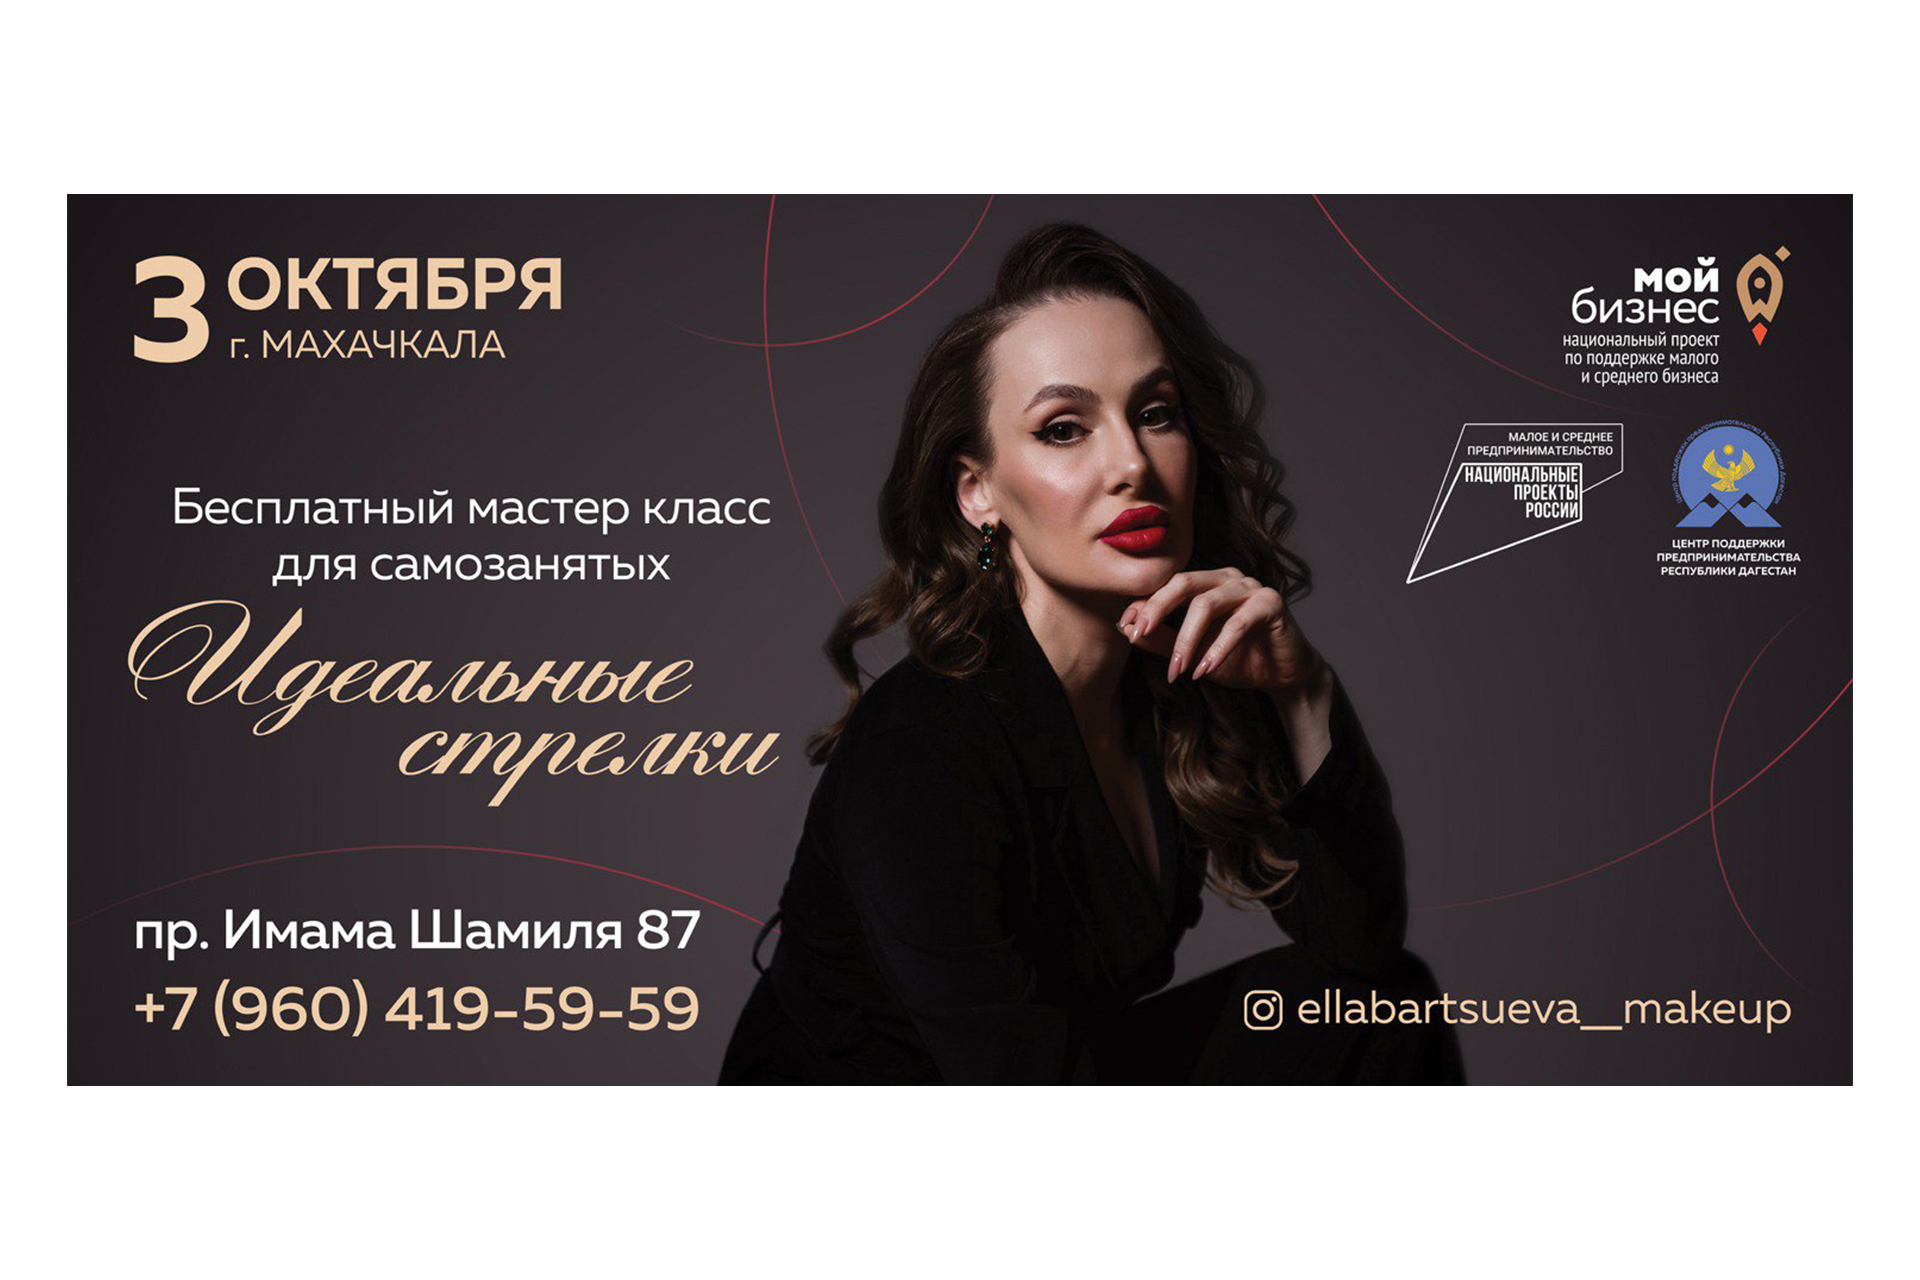 В Махачкале состоится бесплатный мастер-класс по макияжу от Эллы Барцуевой.